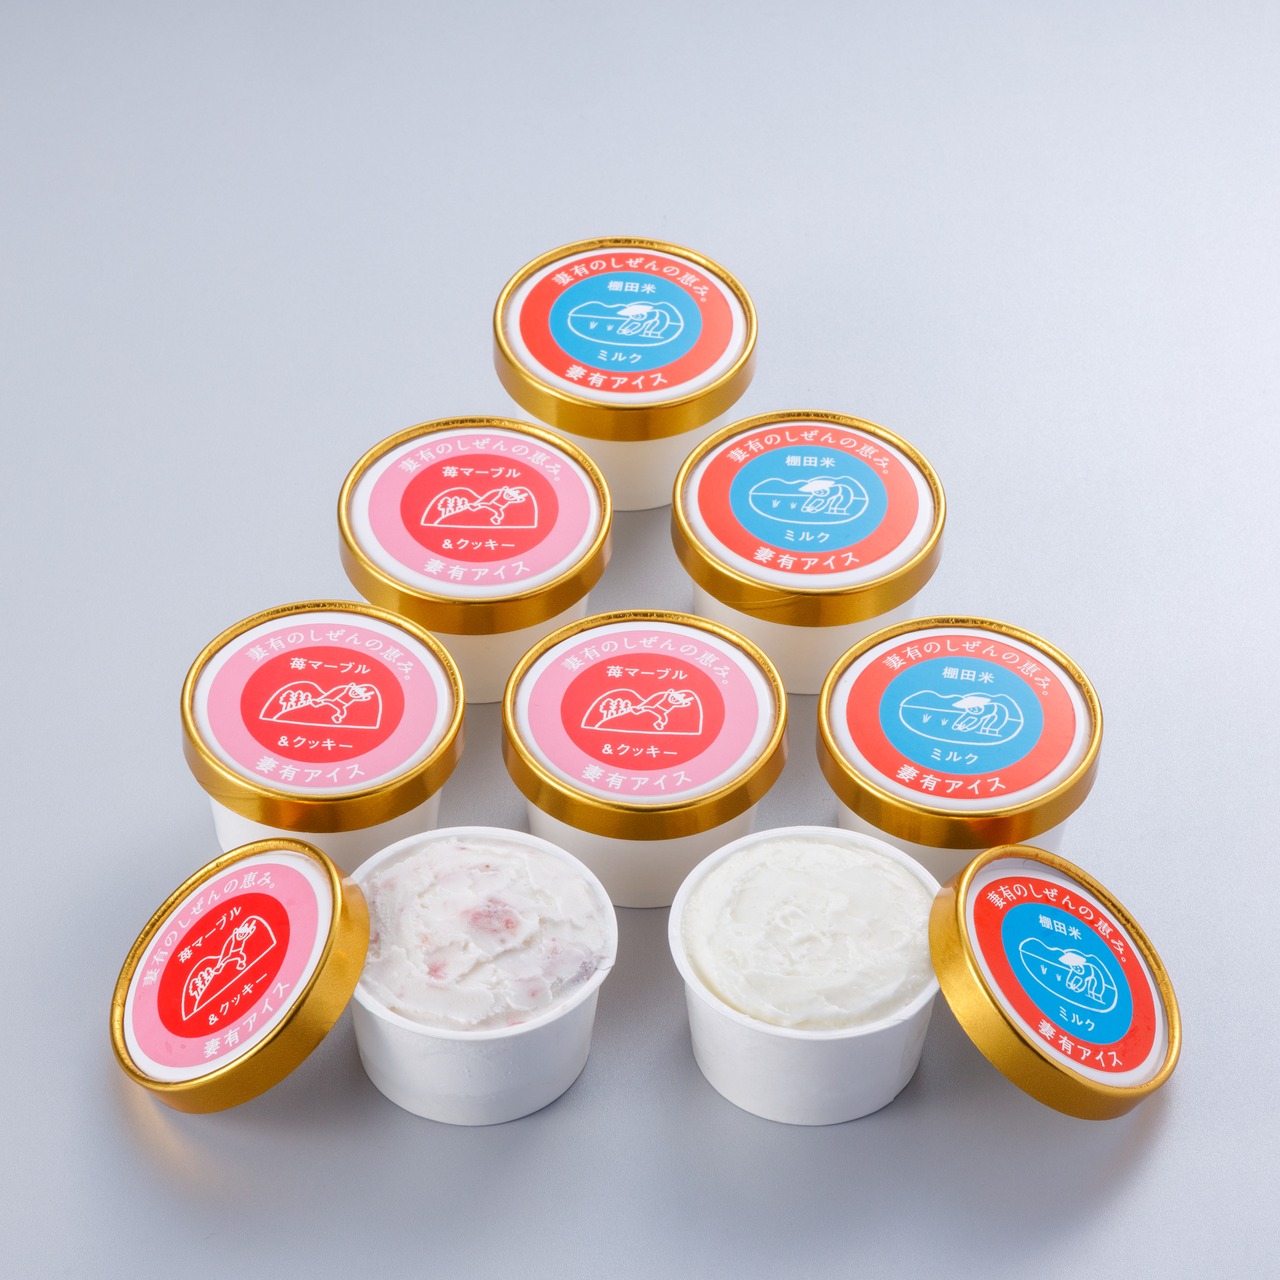 妻有アイス8個セット/ Tsumari Ice Cream Gift Set <8pcs>